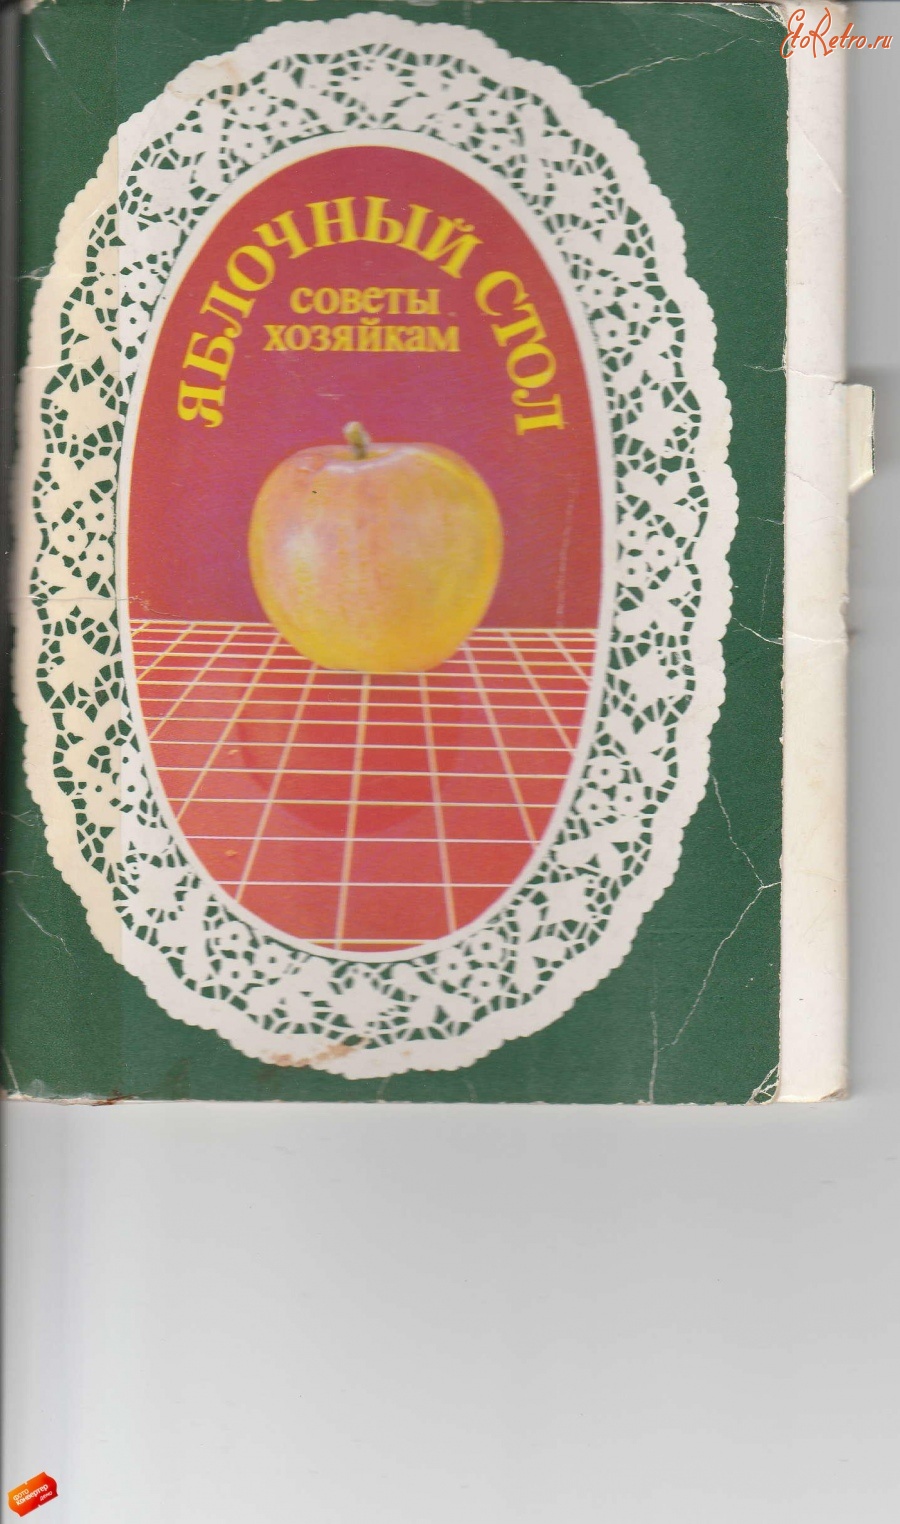 Ретро открытки - Яблочный стол.Советы хозяйкам.(обложка)